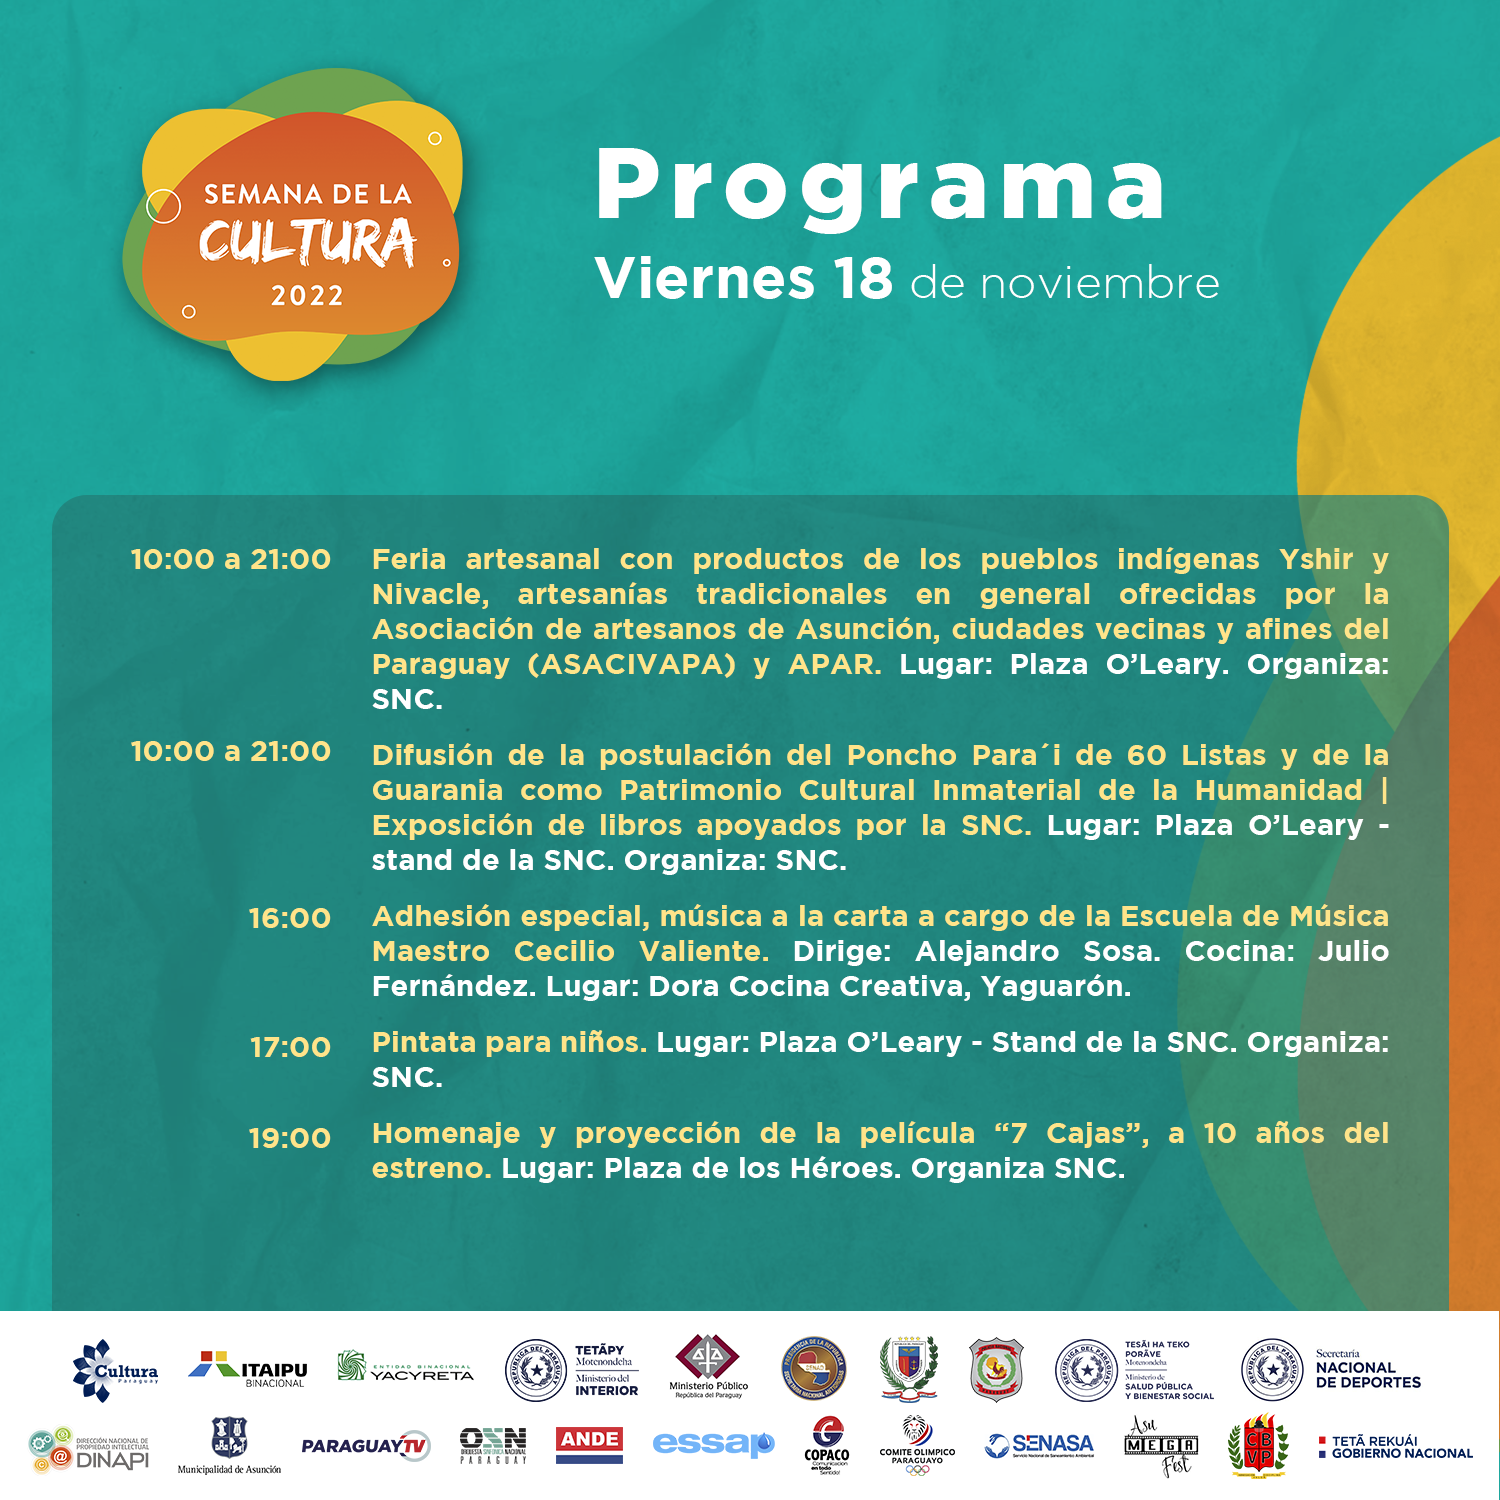 #SemanaCultura2022 || Programa viernes 18 de noviembre imagen